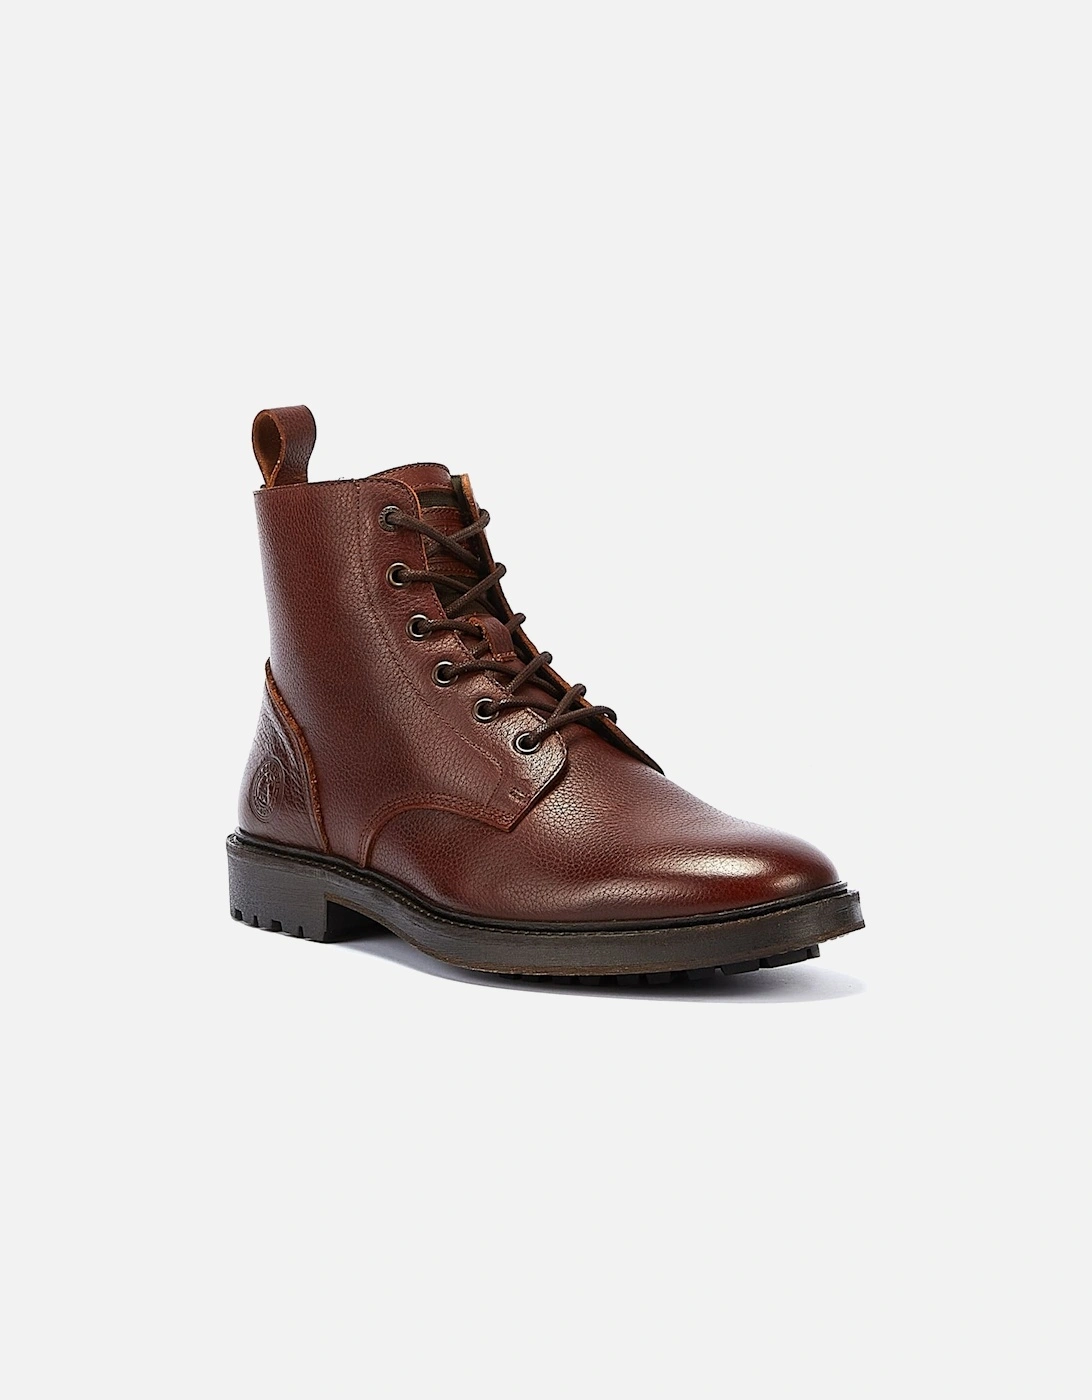 Heyford Men's Chestnut Boots